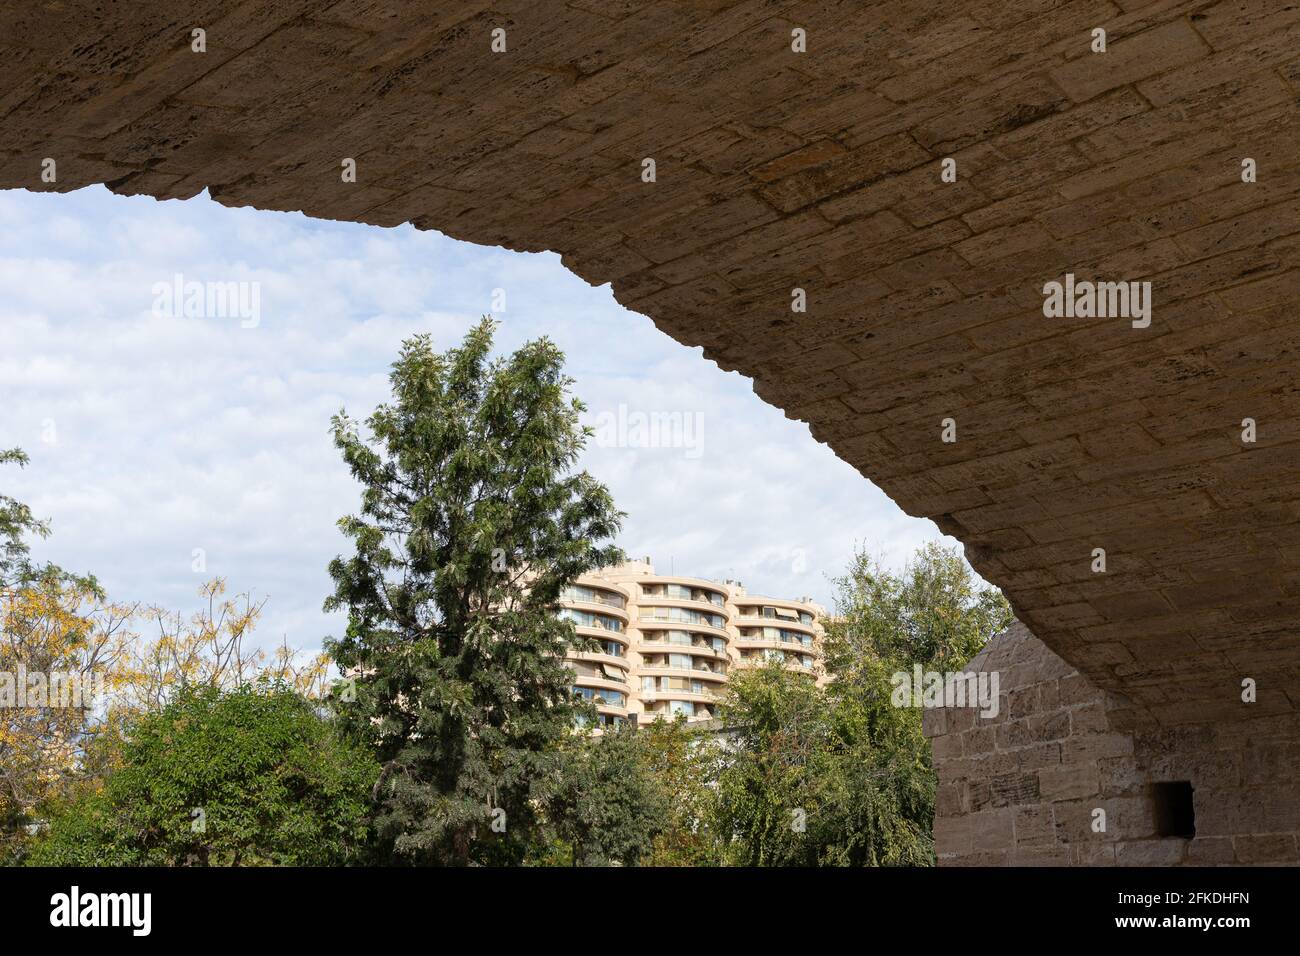 Alte Steinbrücke über altes Flussbett, Stadtpark. Puente de la Trinidad, Fluss Turia, Valencia, Spanien. Steinaschlar-Konstruktion. Stockfoto